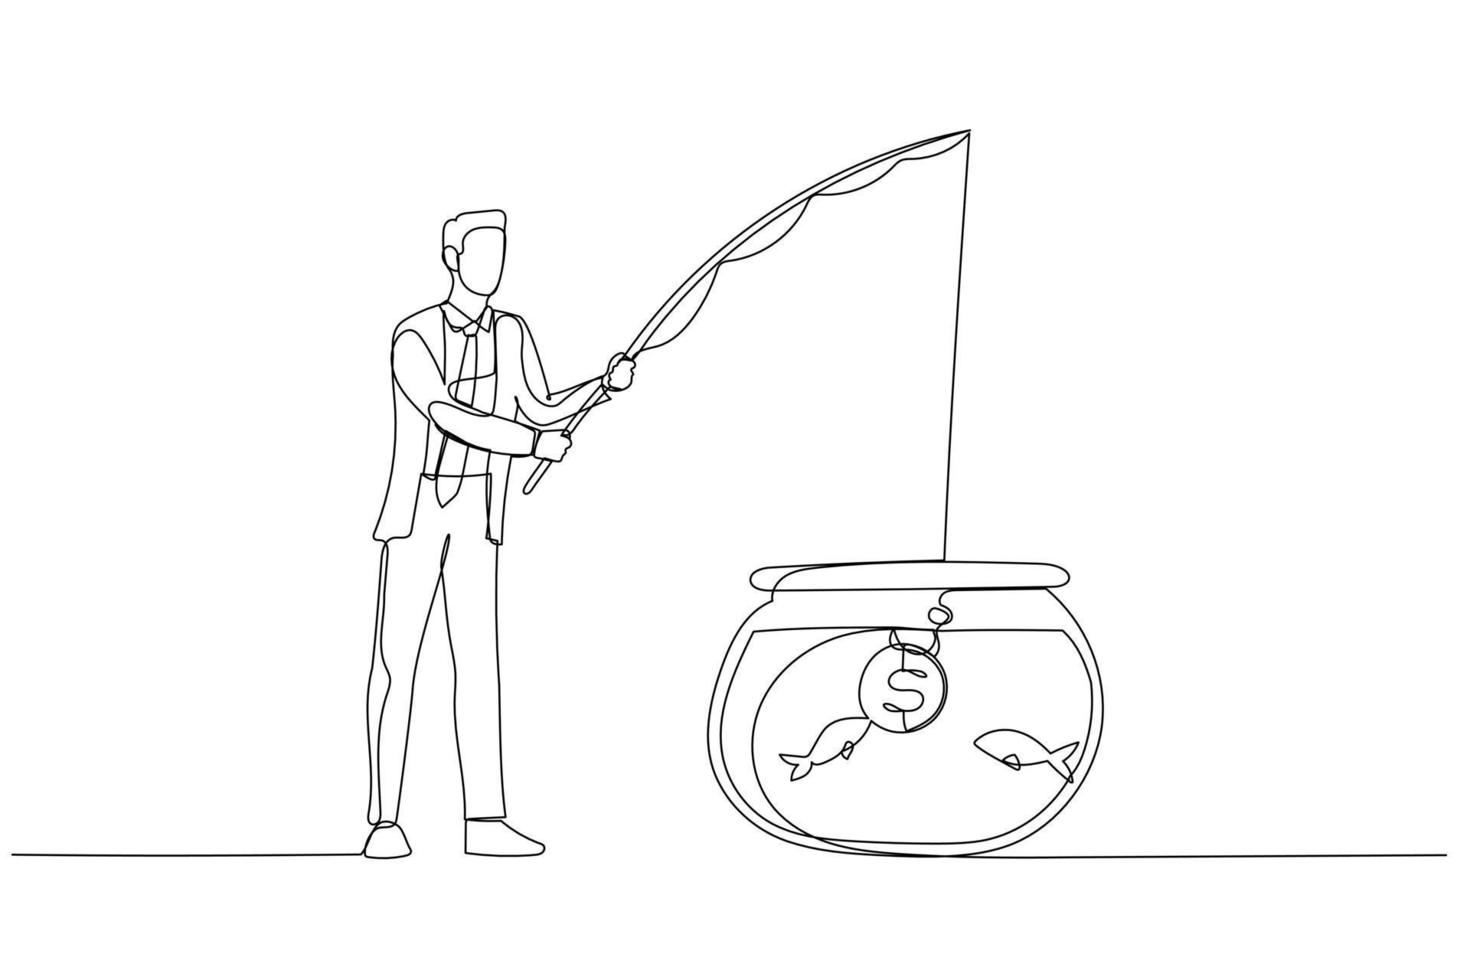 illustration des geschäftsmannes, der versucht, mit münzenködern zu haken und zu fangen. Kunststil mit einer durchgehenden Linie vektor